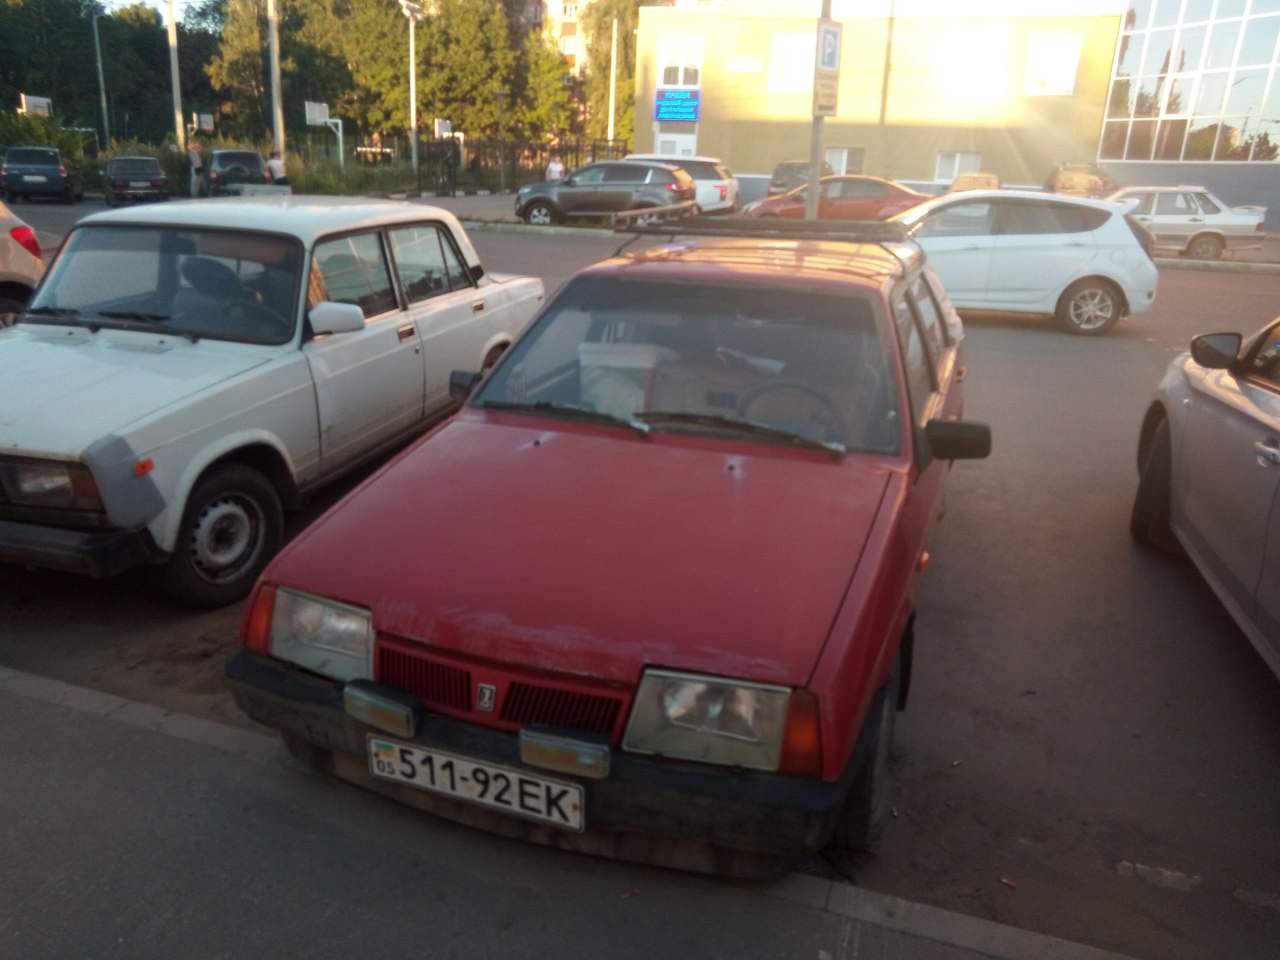 Брошенный на парковке автомобиль с украинскими номерами привлек внимание горожан